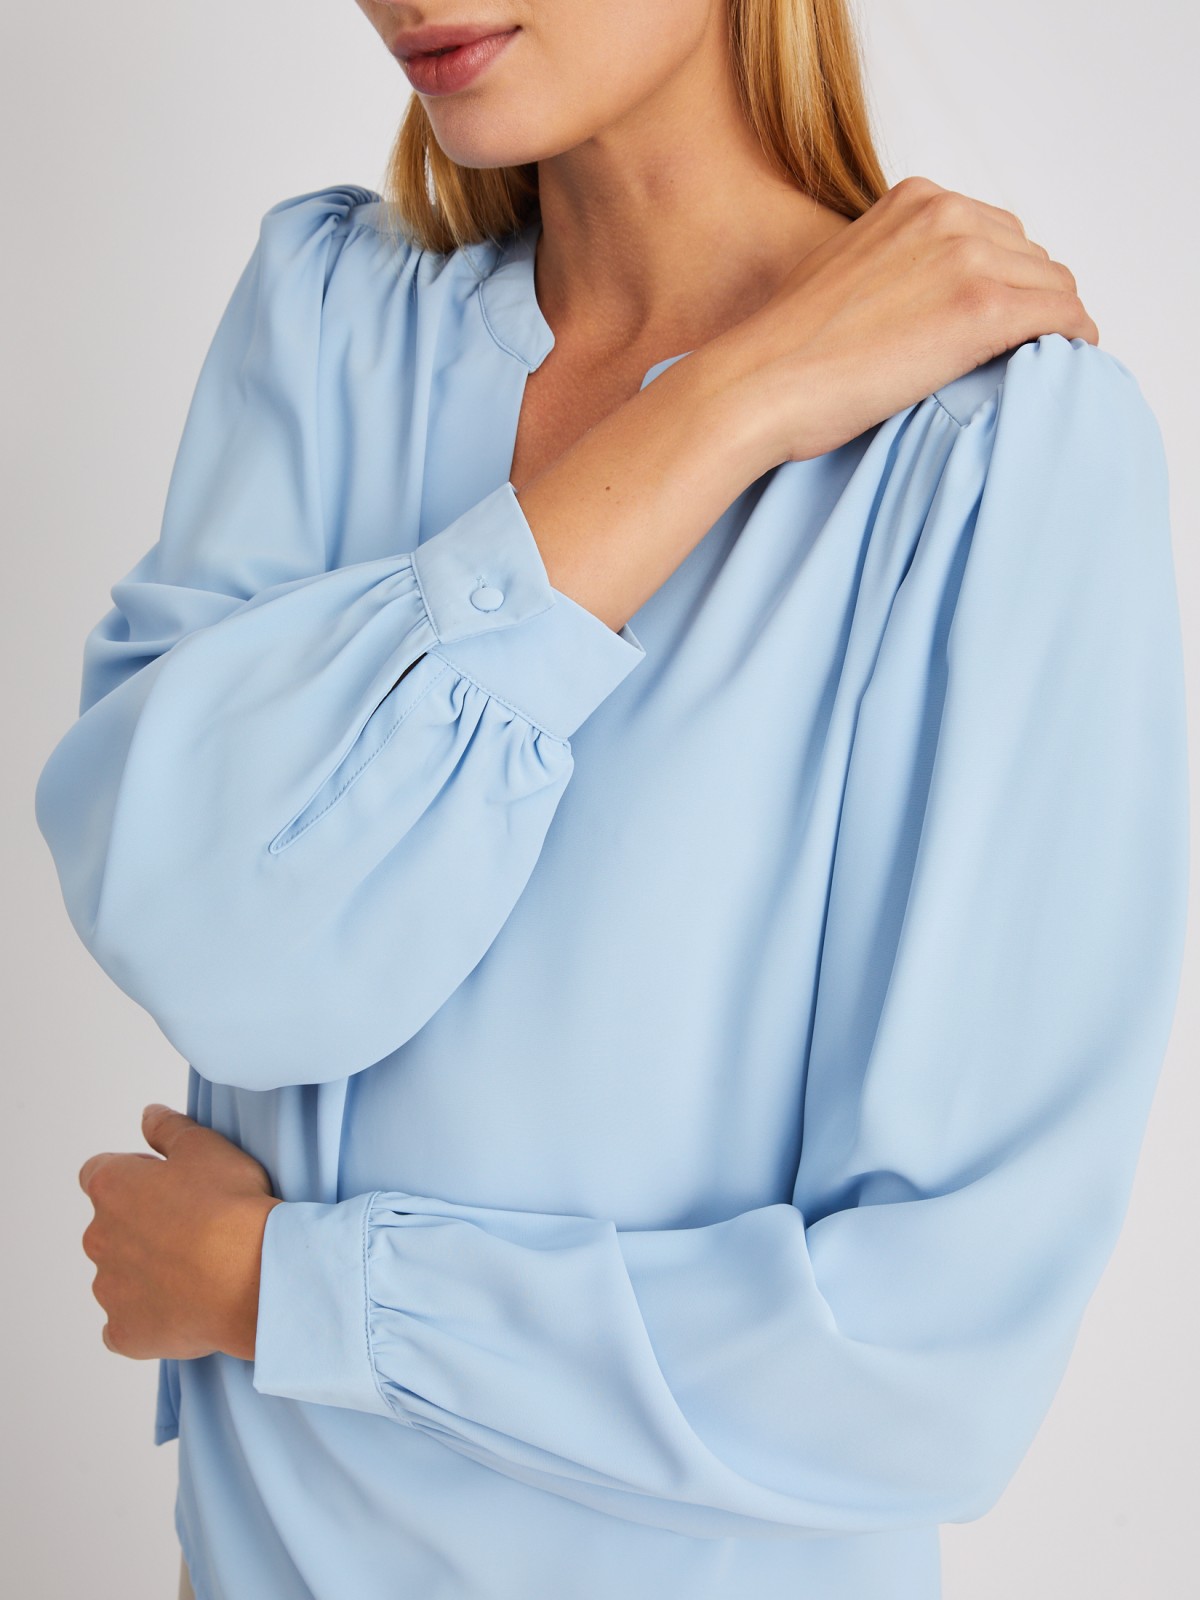 Блузка с объёмными рукавами и V-образным вырезом на груди zolla 024121159122, цвет светло-голубой, размер XS - фото 5